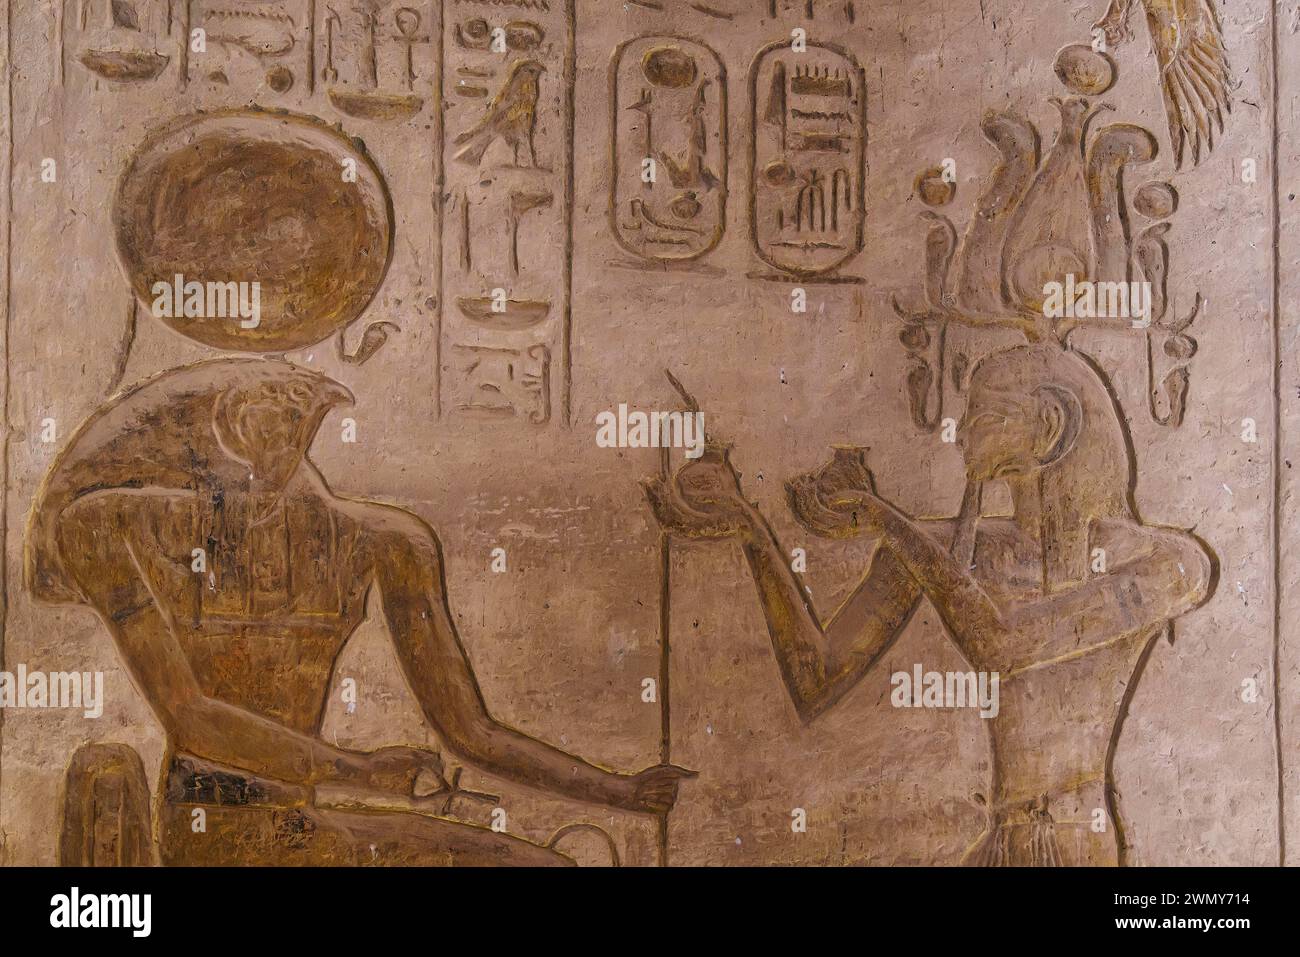 Egitto, Abu Simbel, monumenti nubiani da Abu Simbel a file, patrimonio dell'umanità dell'UNESCO, tempio Nefertari, Ramses II offre vino a Ra Horakhty Foto Stock